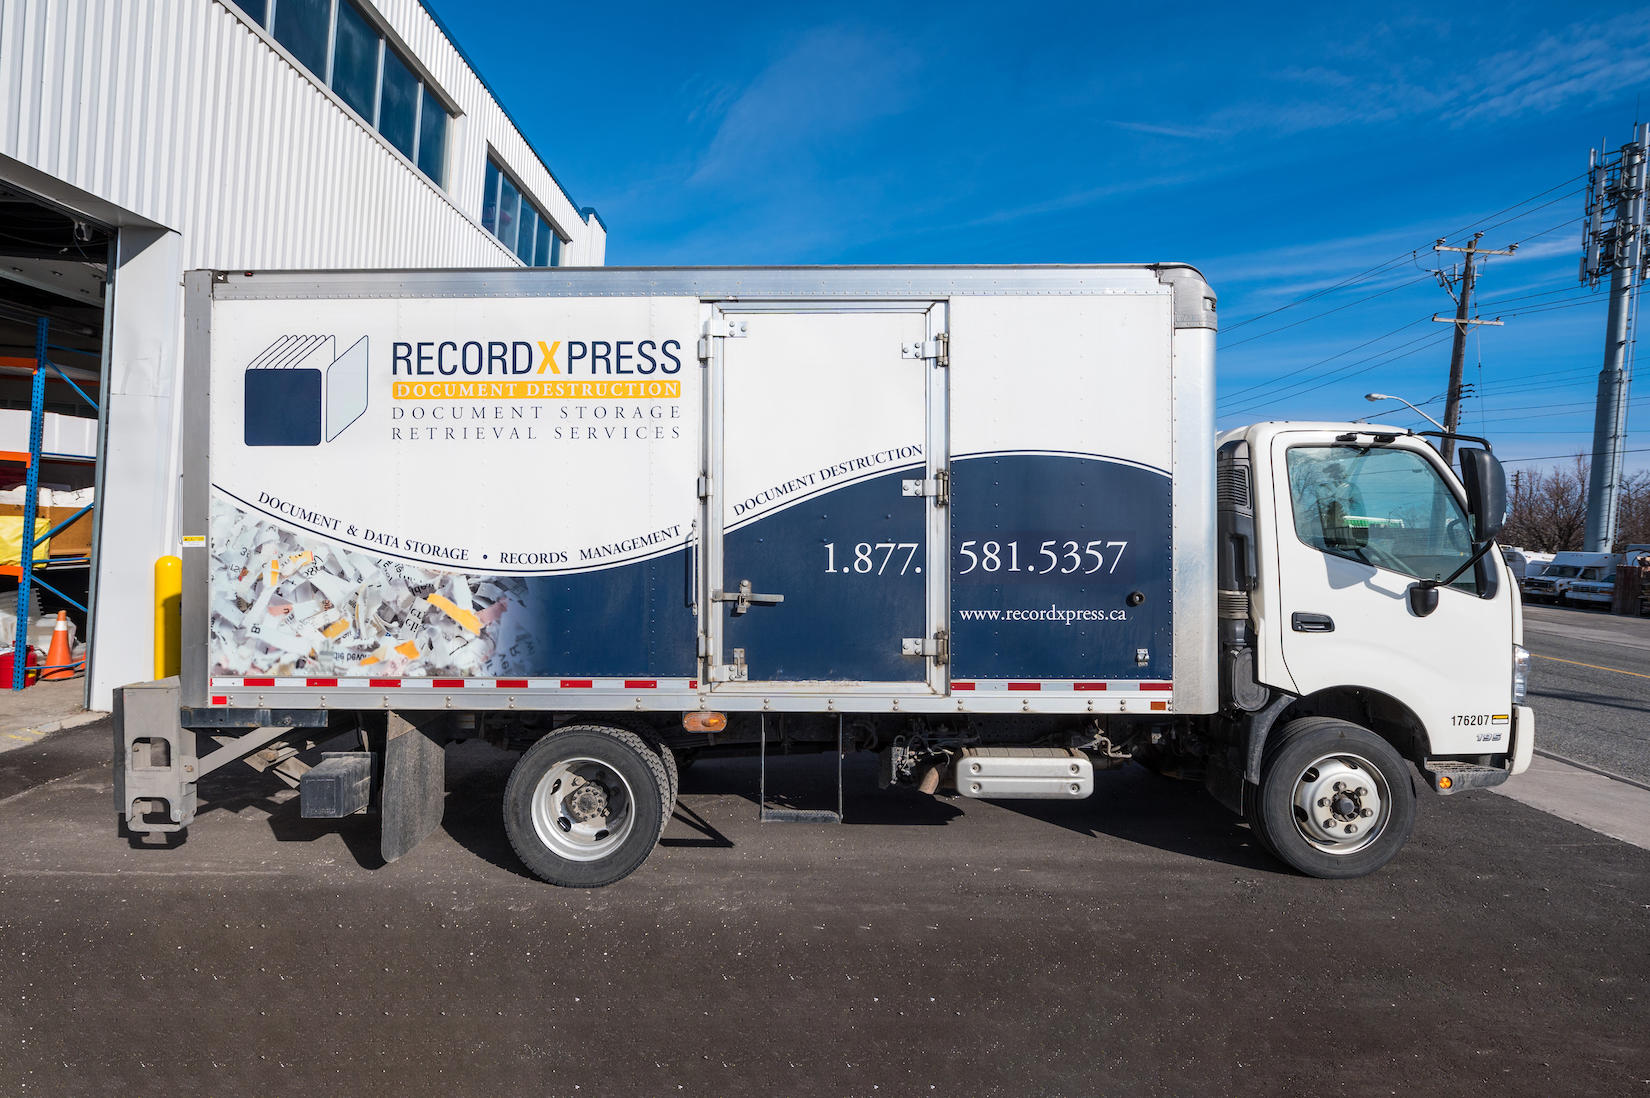 RecordXpress Windsor Windsor (519)977-0661